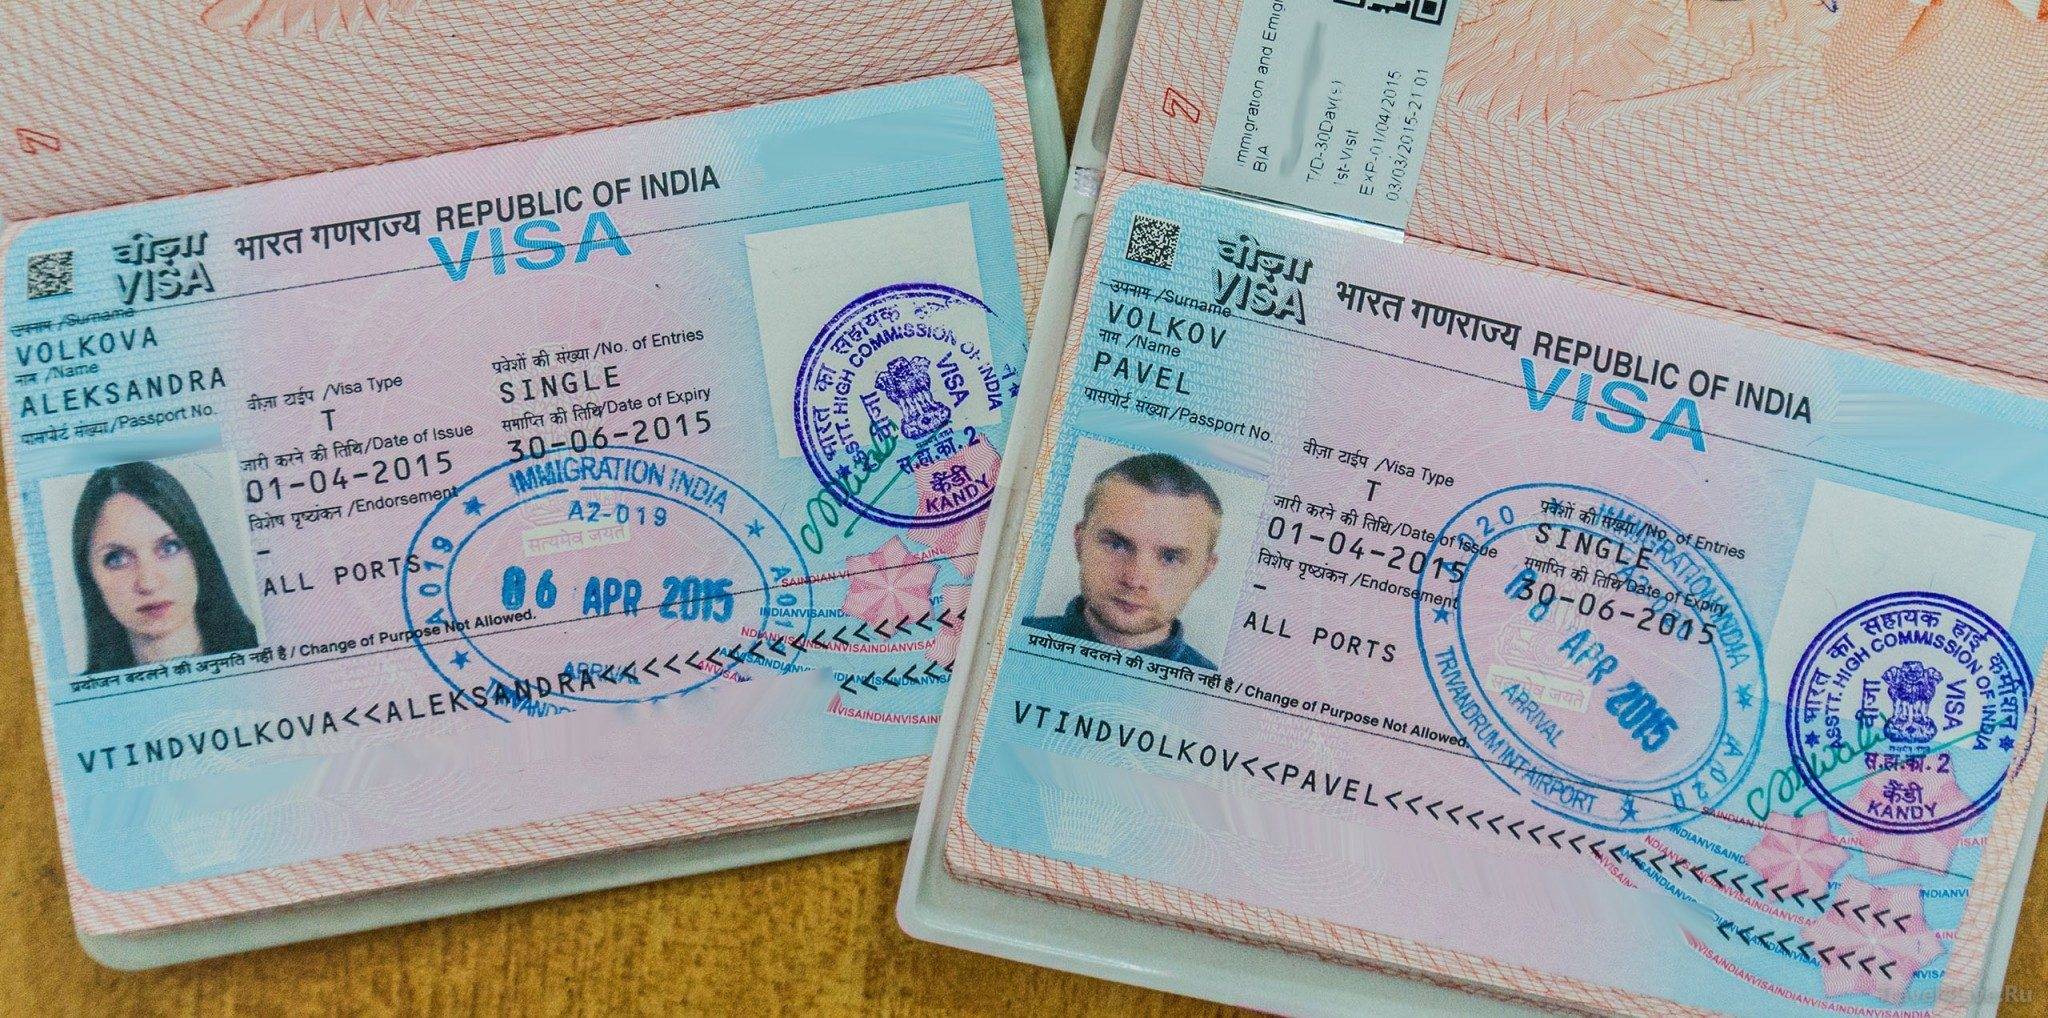 Виза в индию туристическая, нужна ли россиянам в 2020 году, как оформить электронную онлайн, бланк и образец анкеты